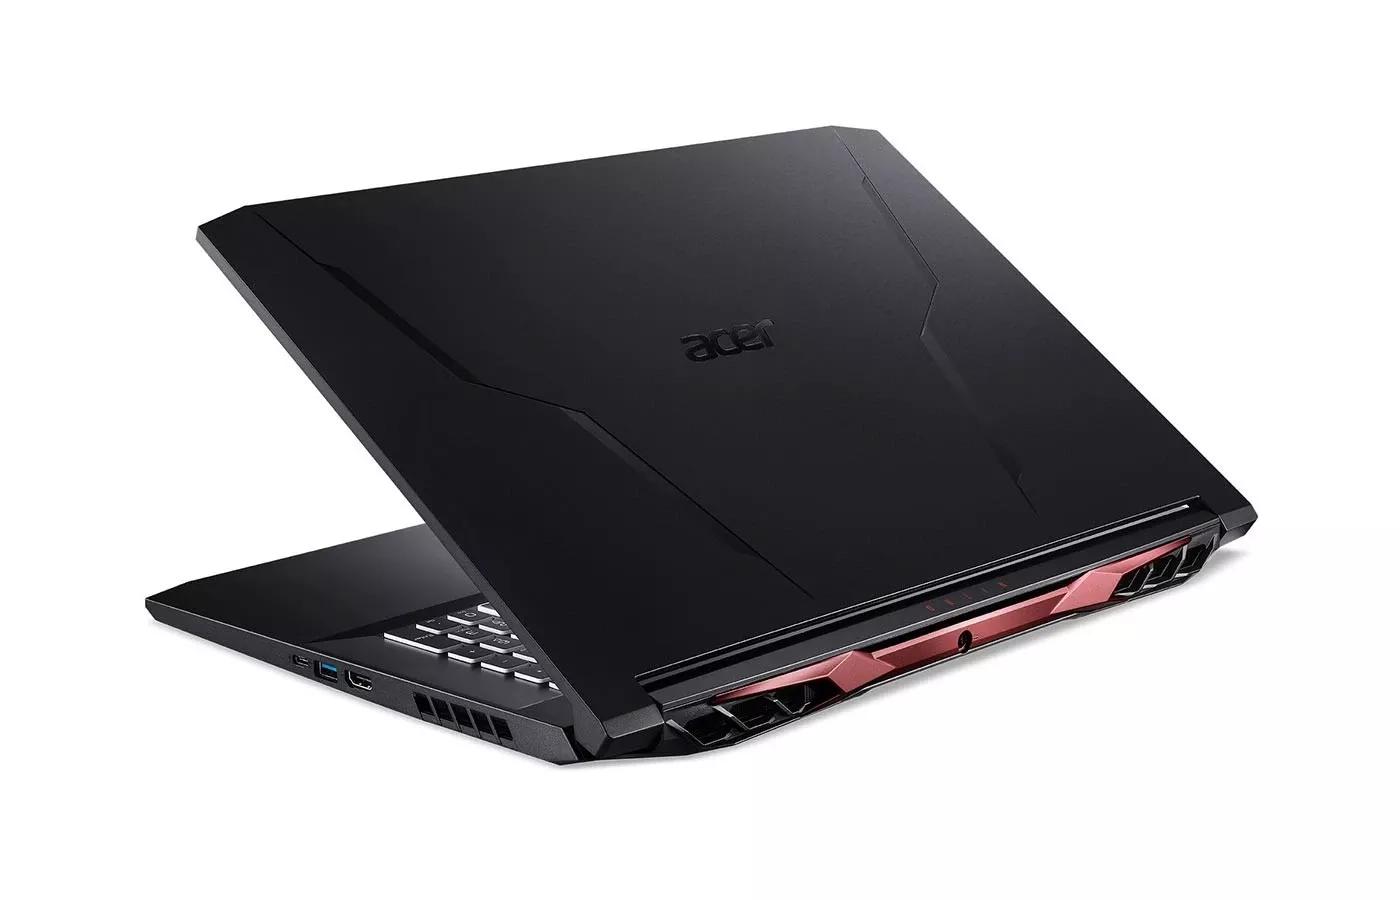 Acer Nitro 5 2020 i7 10TH GEN | RTX 3060 | 512GB SSD | 8GB RAM | 15.6" FHD 144hz | 1 Year Warranty